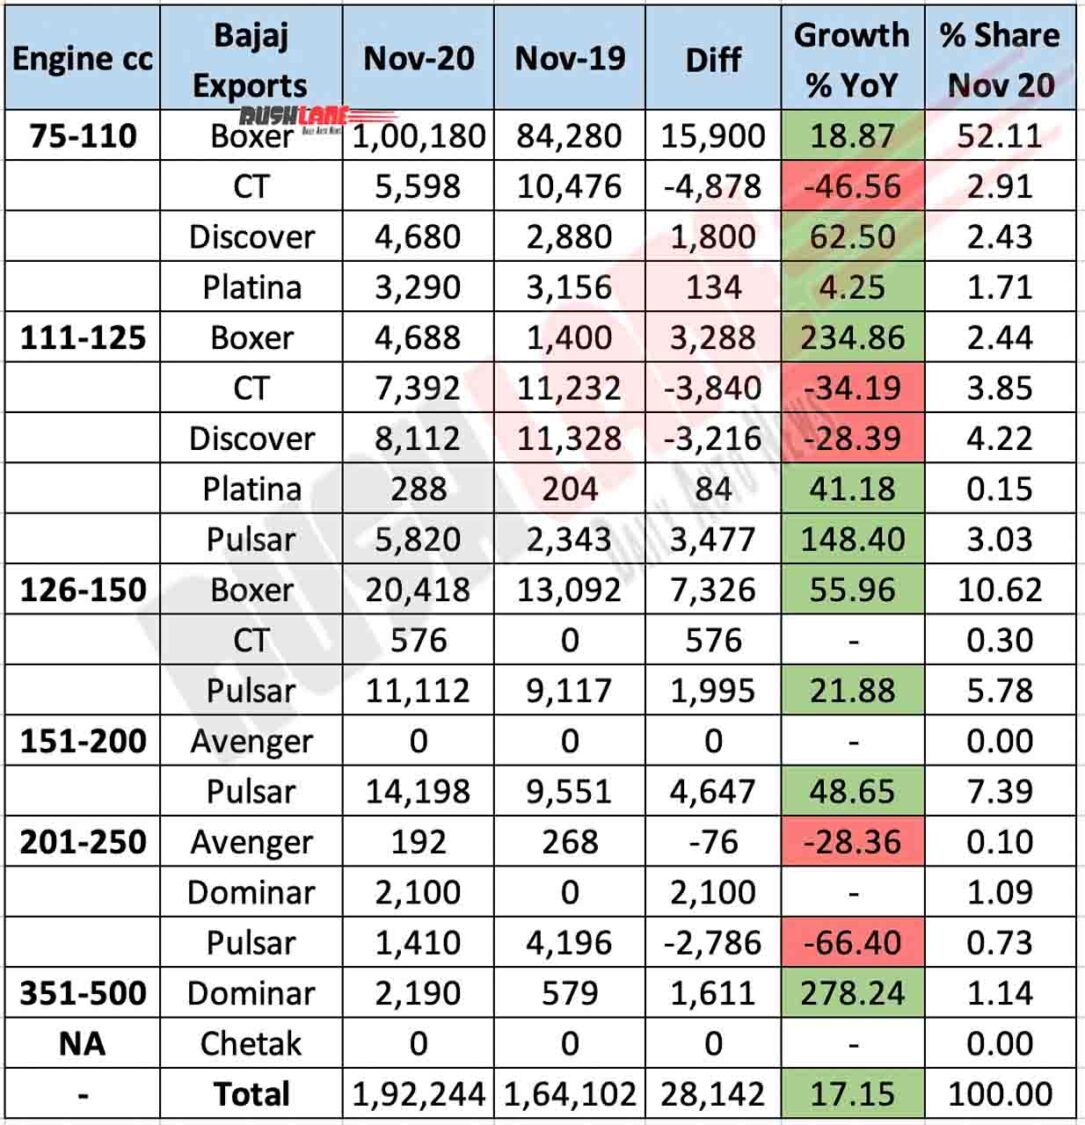 Bajaj Exports Nov 2020